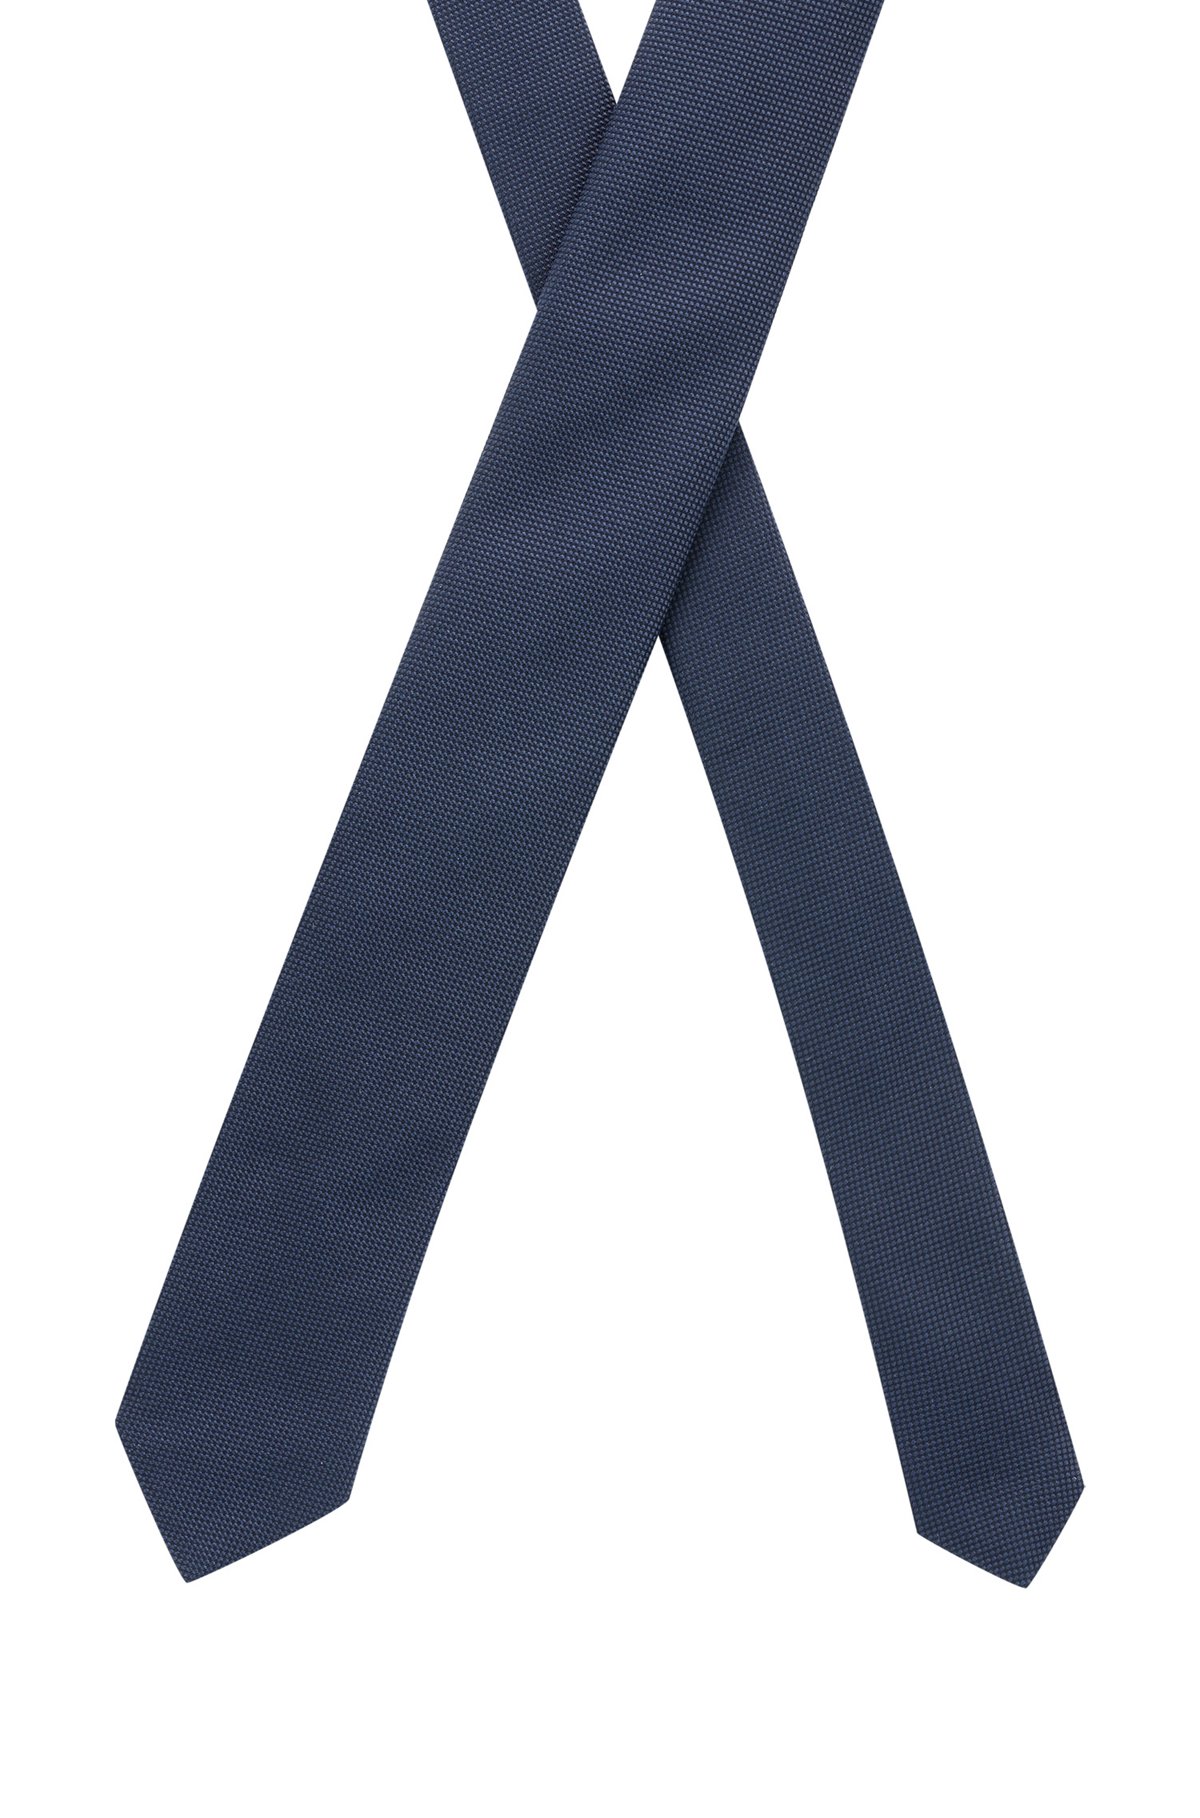 Cravate jacquard à micro motif en pure soie, Bleu foncé